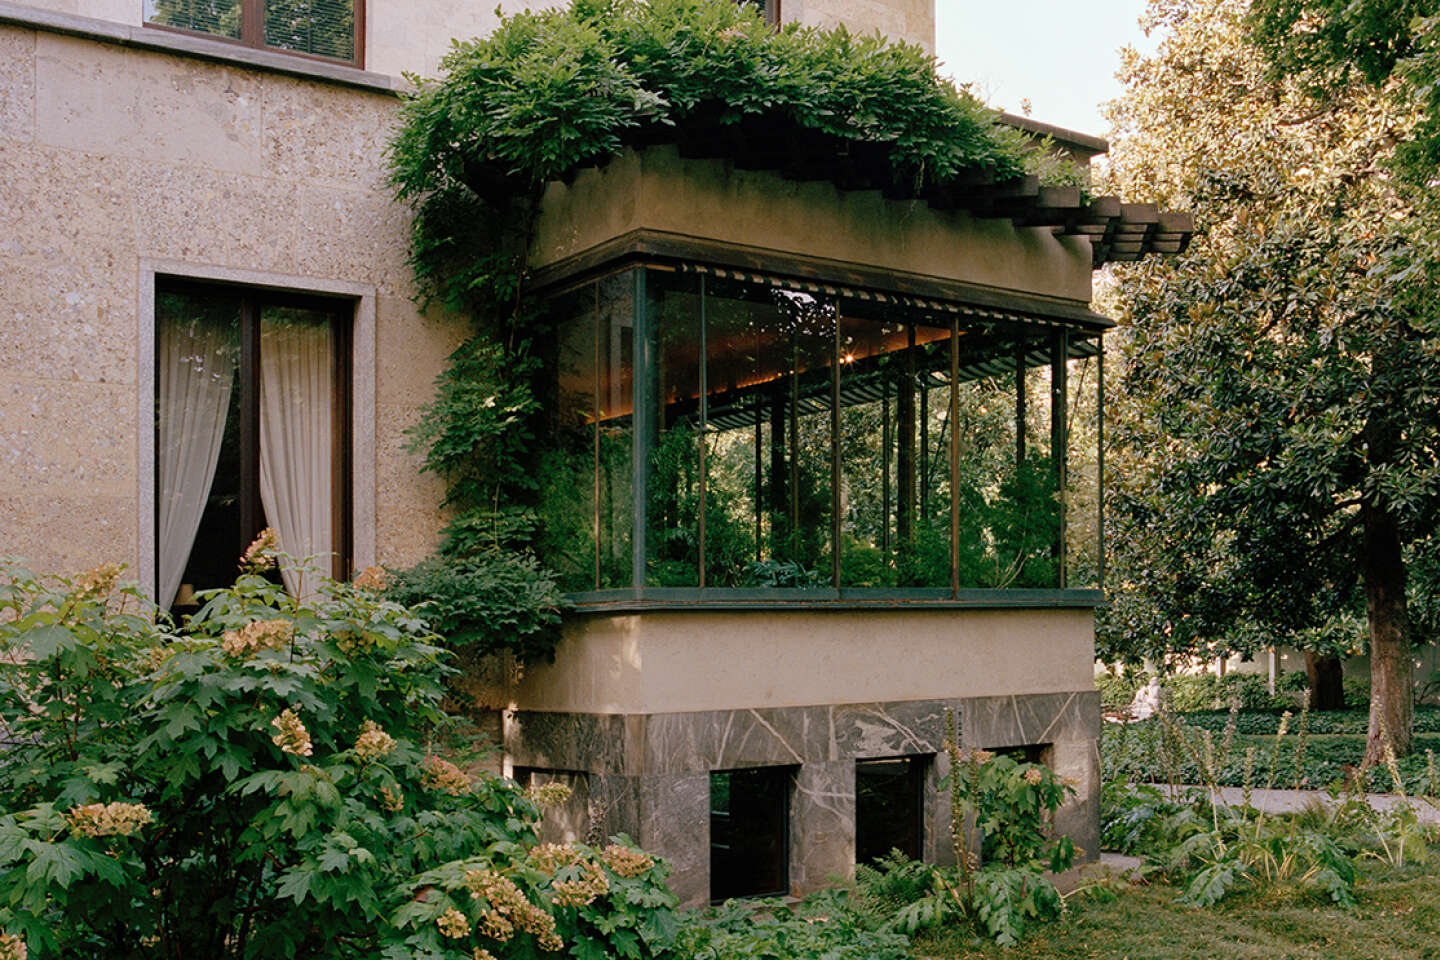 In Lombardije, de extreme moderniteit van Villa Necchi Campiglio